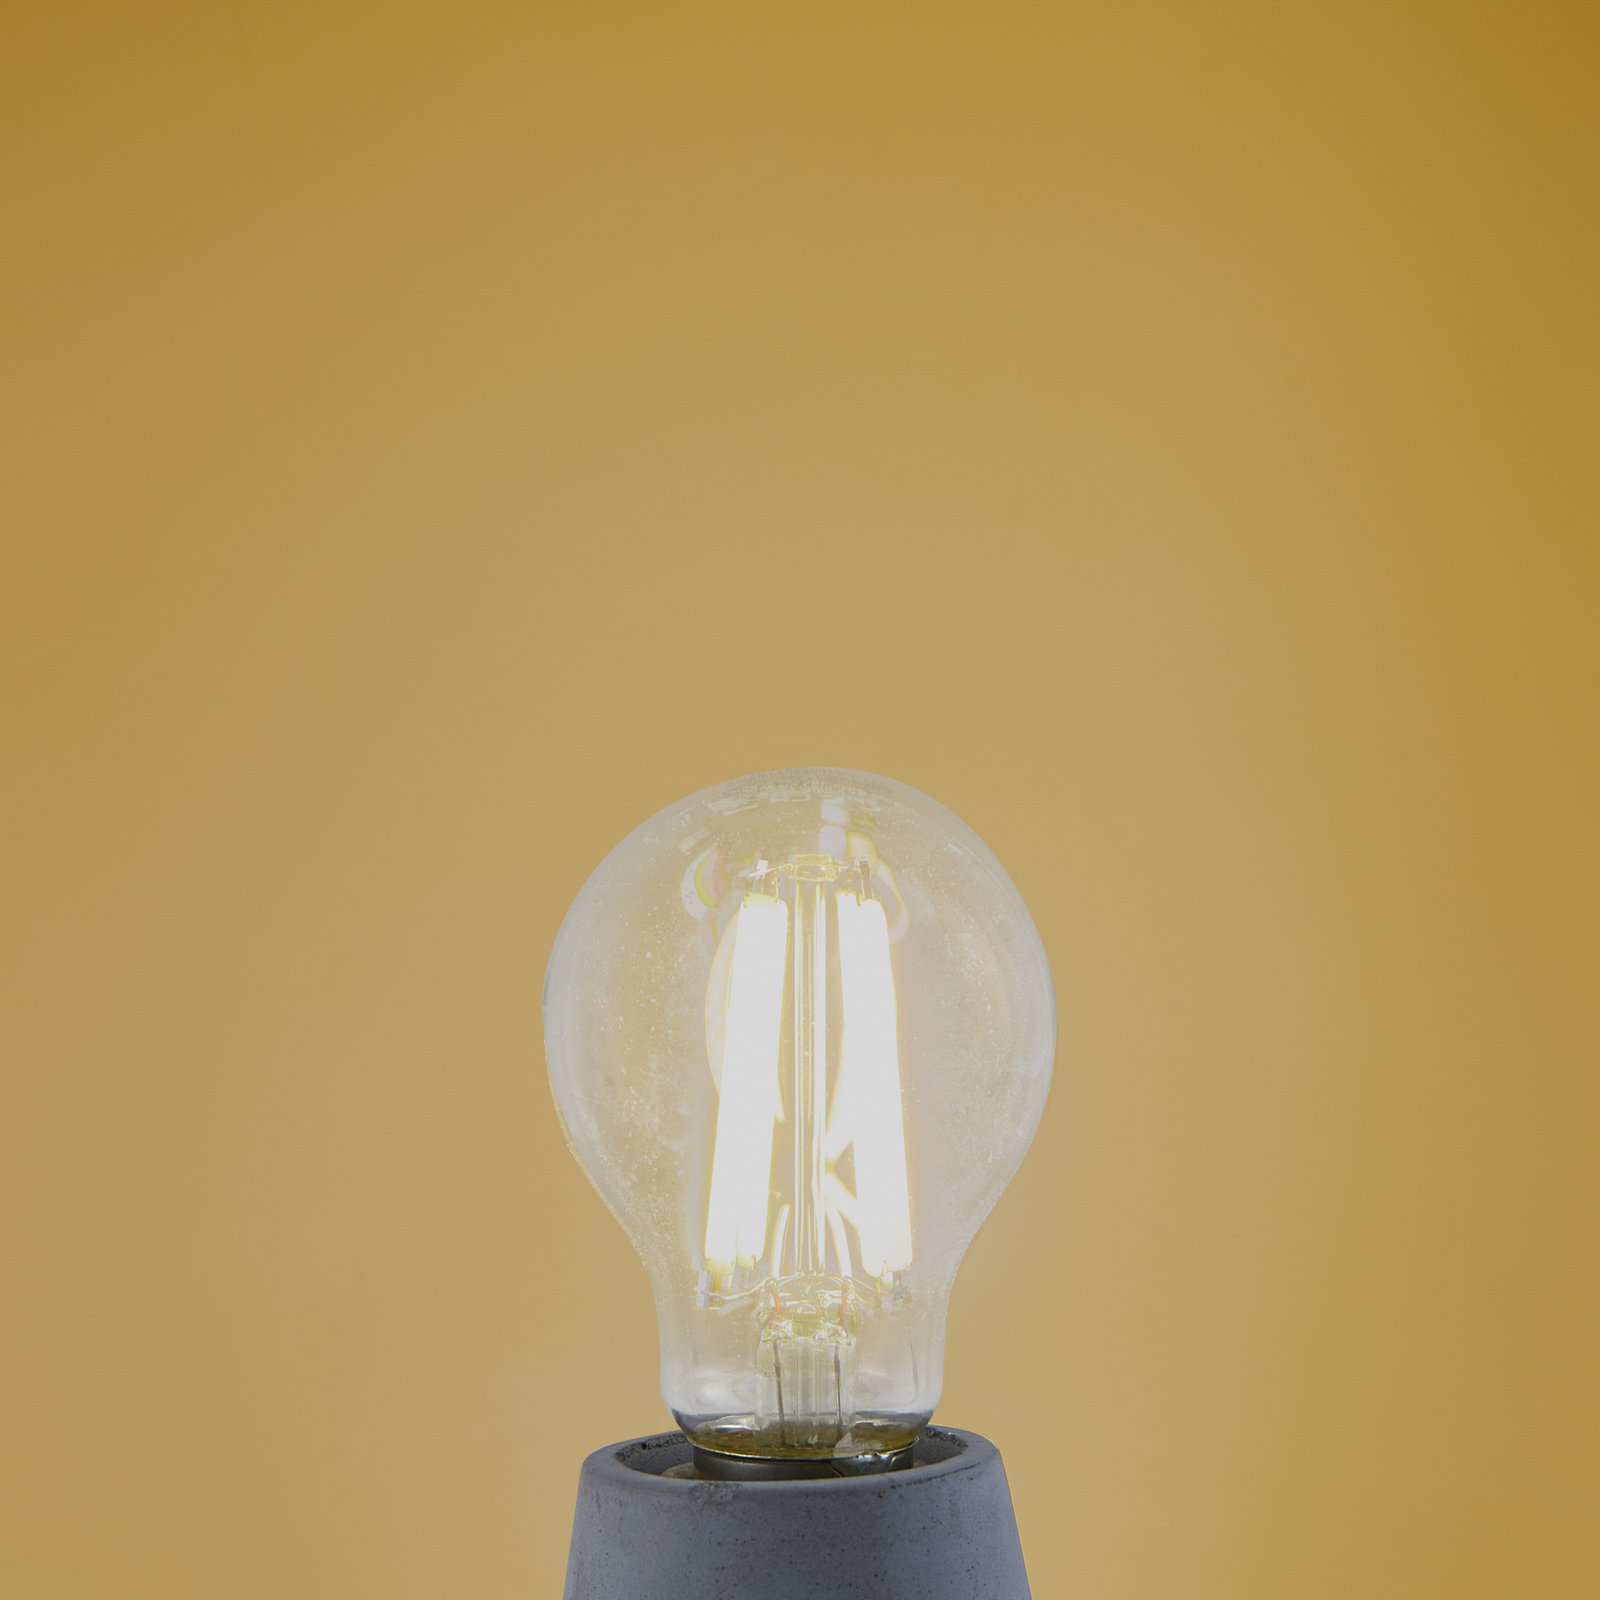 LED bulb Filament, clear, E27, 7.2 W, 3000K, 1521 lm